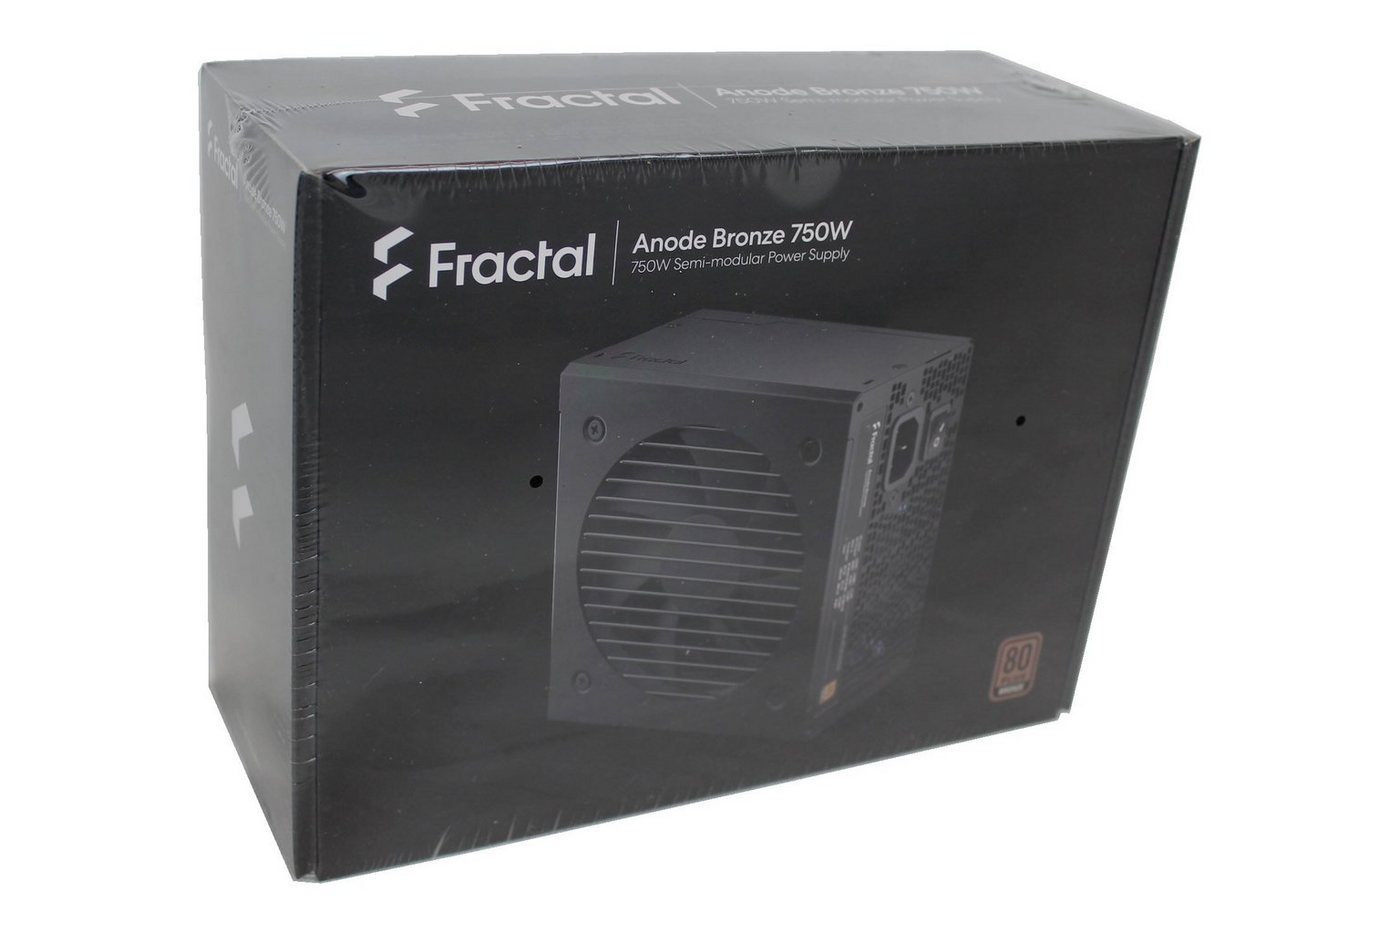 Fractal Design Anode Bronze 750W, FD-P-AA1B-750-EU PC-Netzteil von Fractal Design